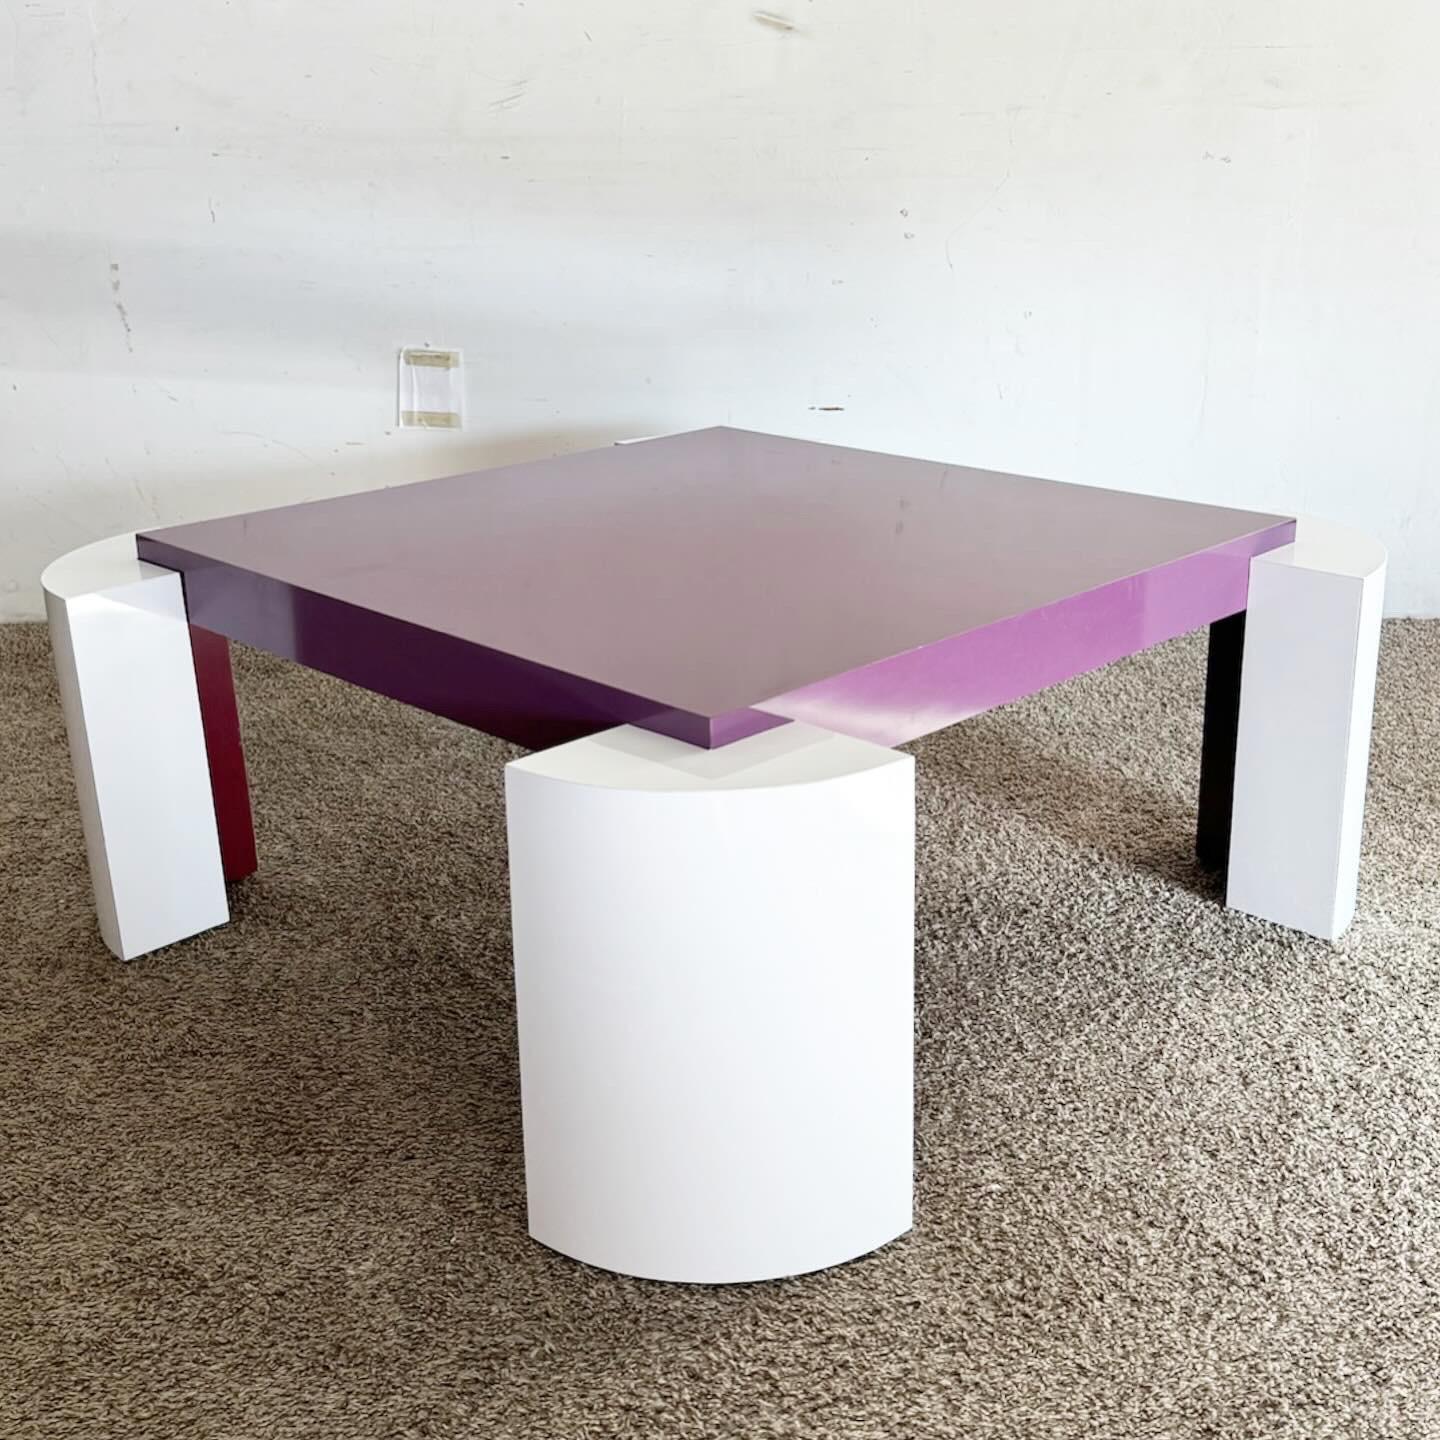 La table basse postmoderne en stratifié laqué violet et blanc constitue un ajout audacieux à tout espace de vie. Cette table présente une finition stratifiée haute brillance en violet et blanc, offrant un contraste saisissant. Durable et facile à